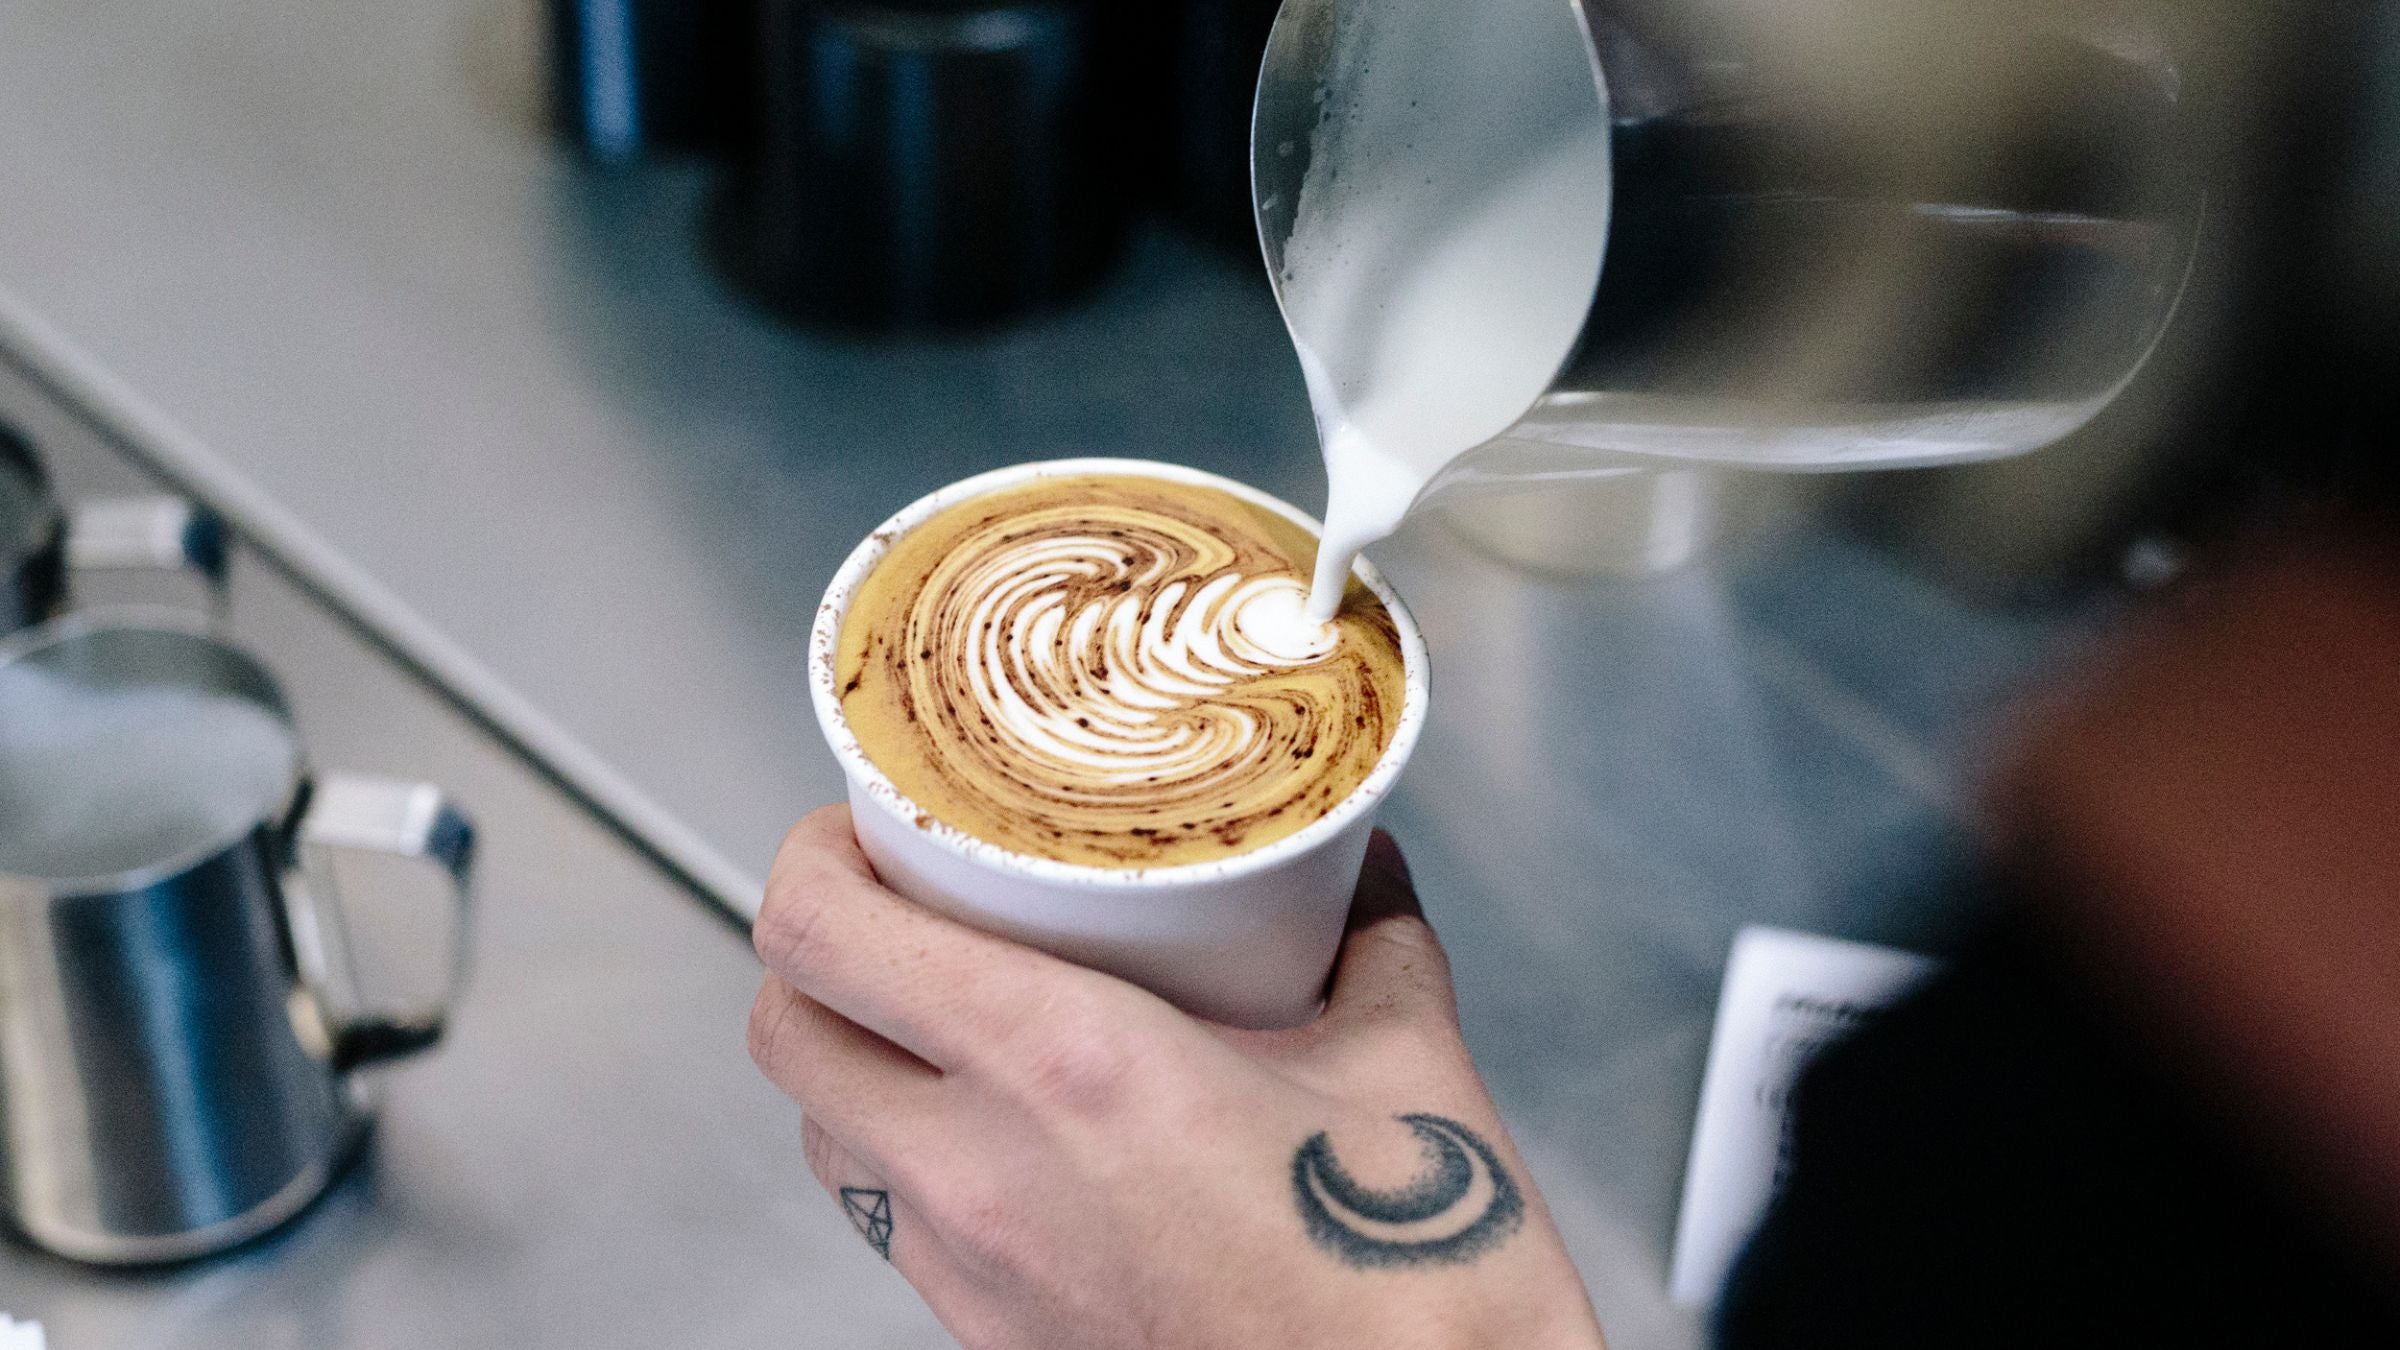 Takeaway coffee with tulip latte art inside